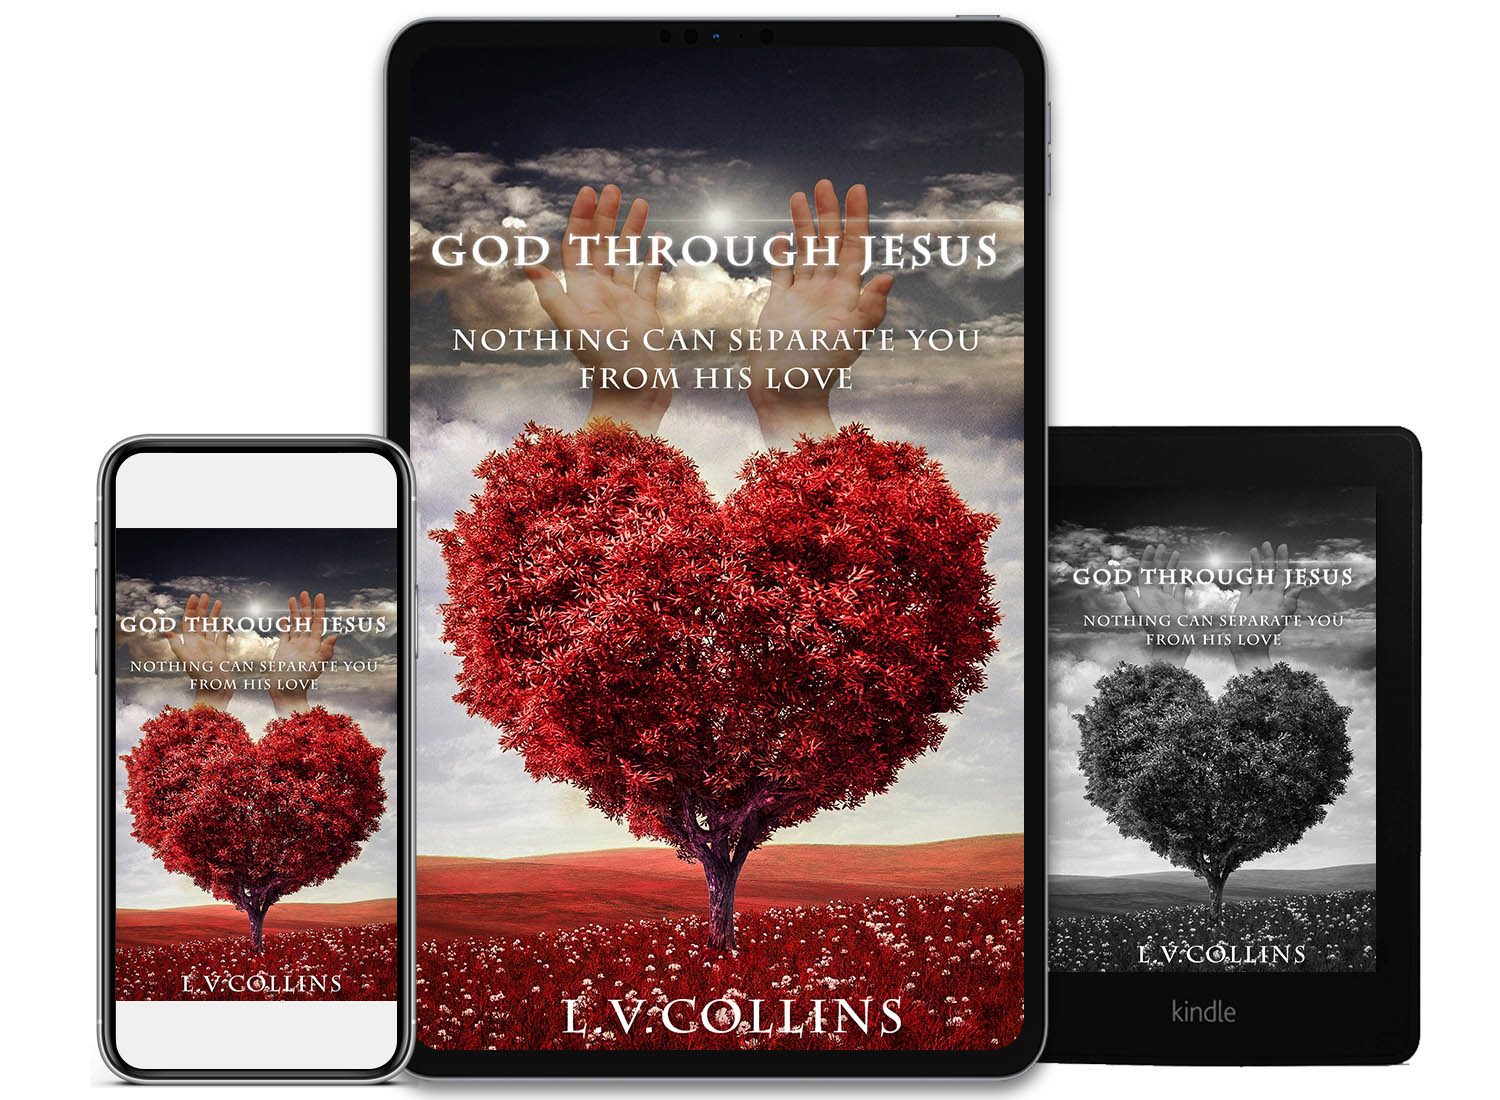 bookconsilio-portfolio-god-through-jesus-ebookcoverdesign